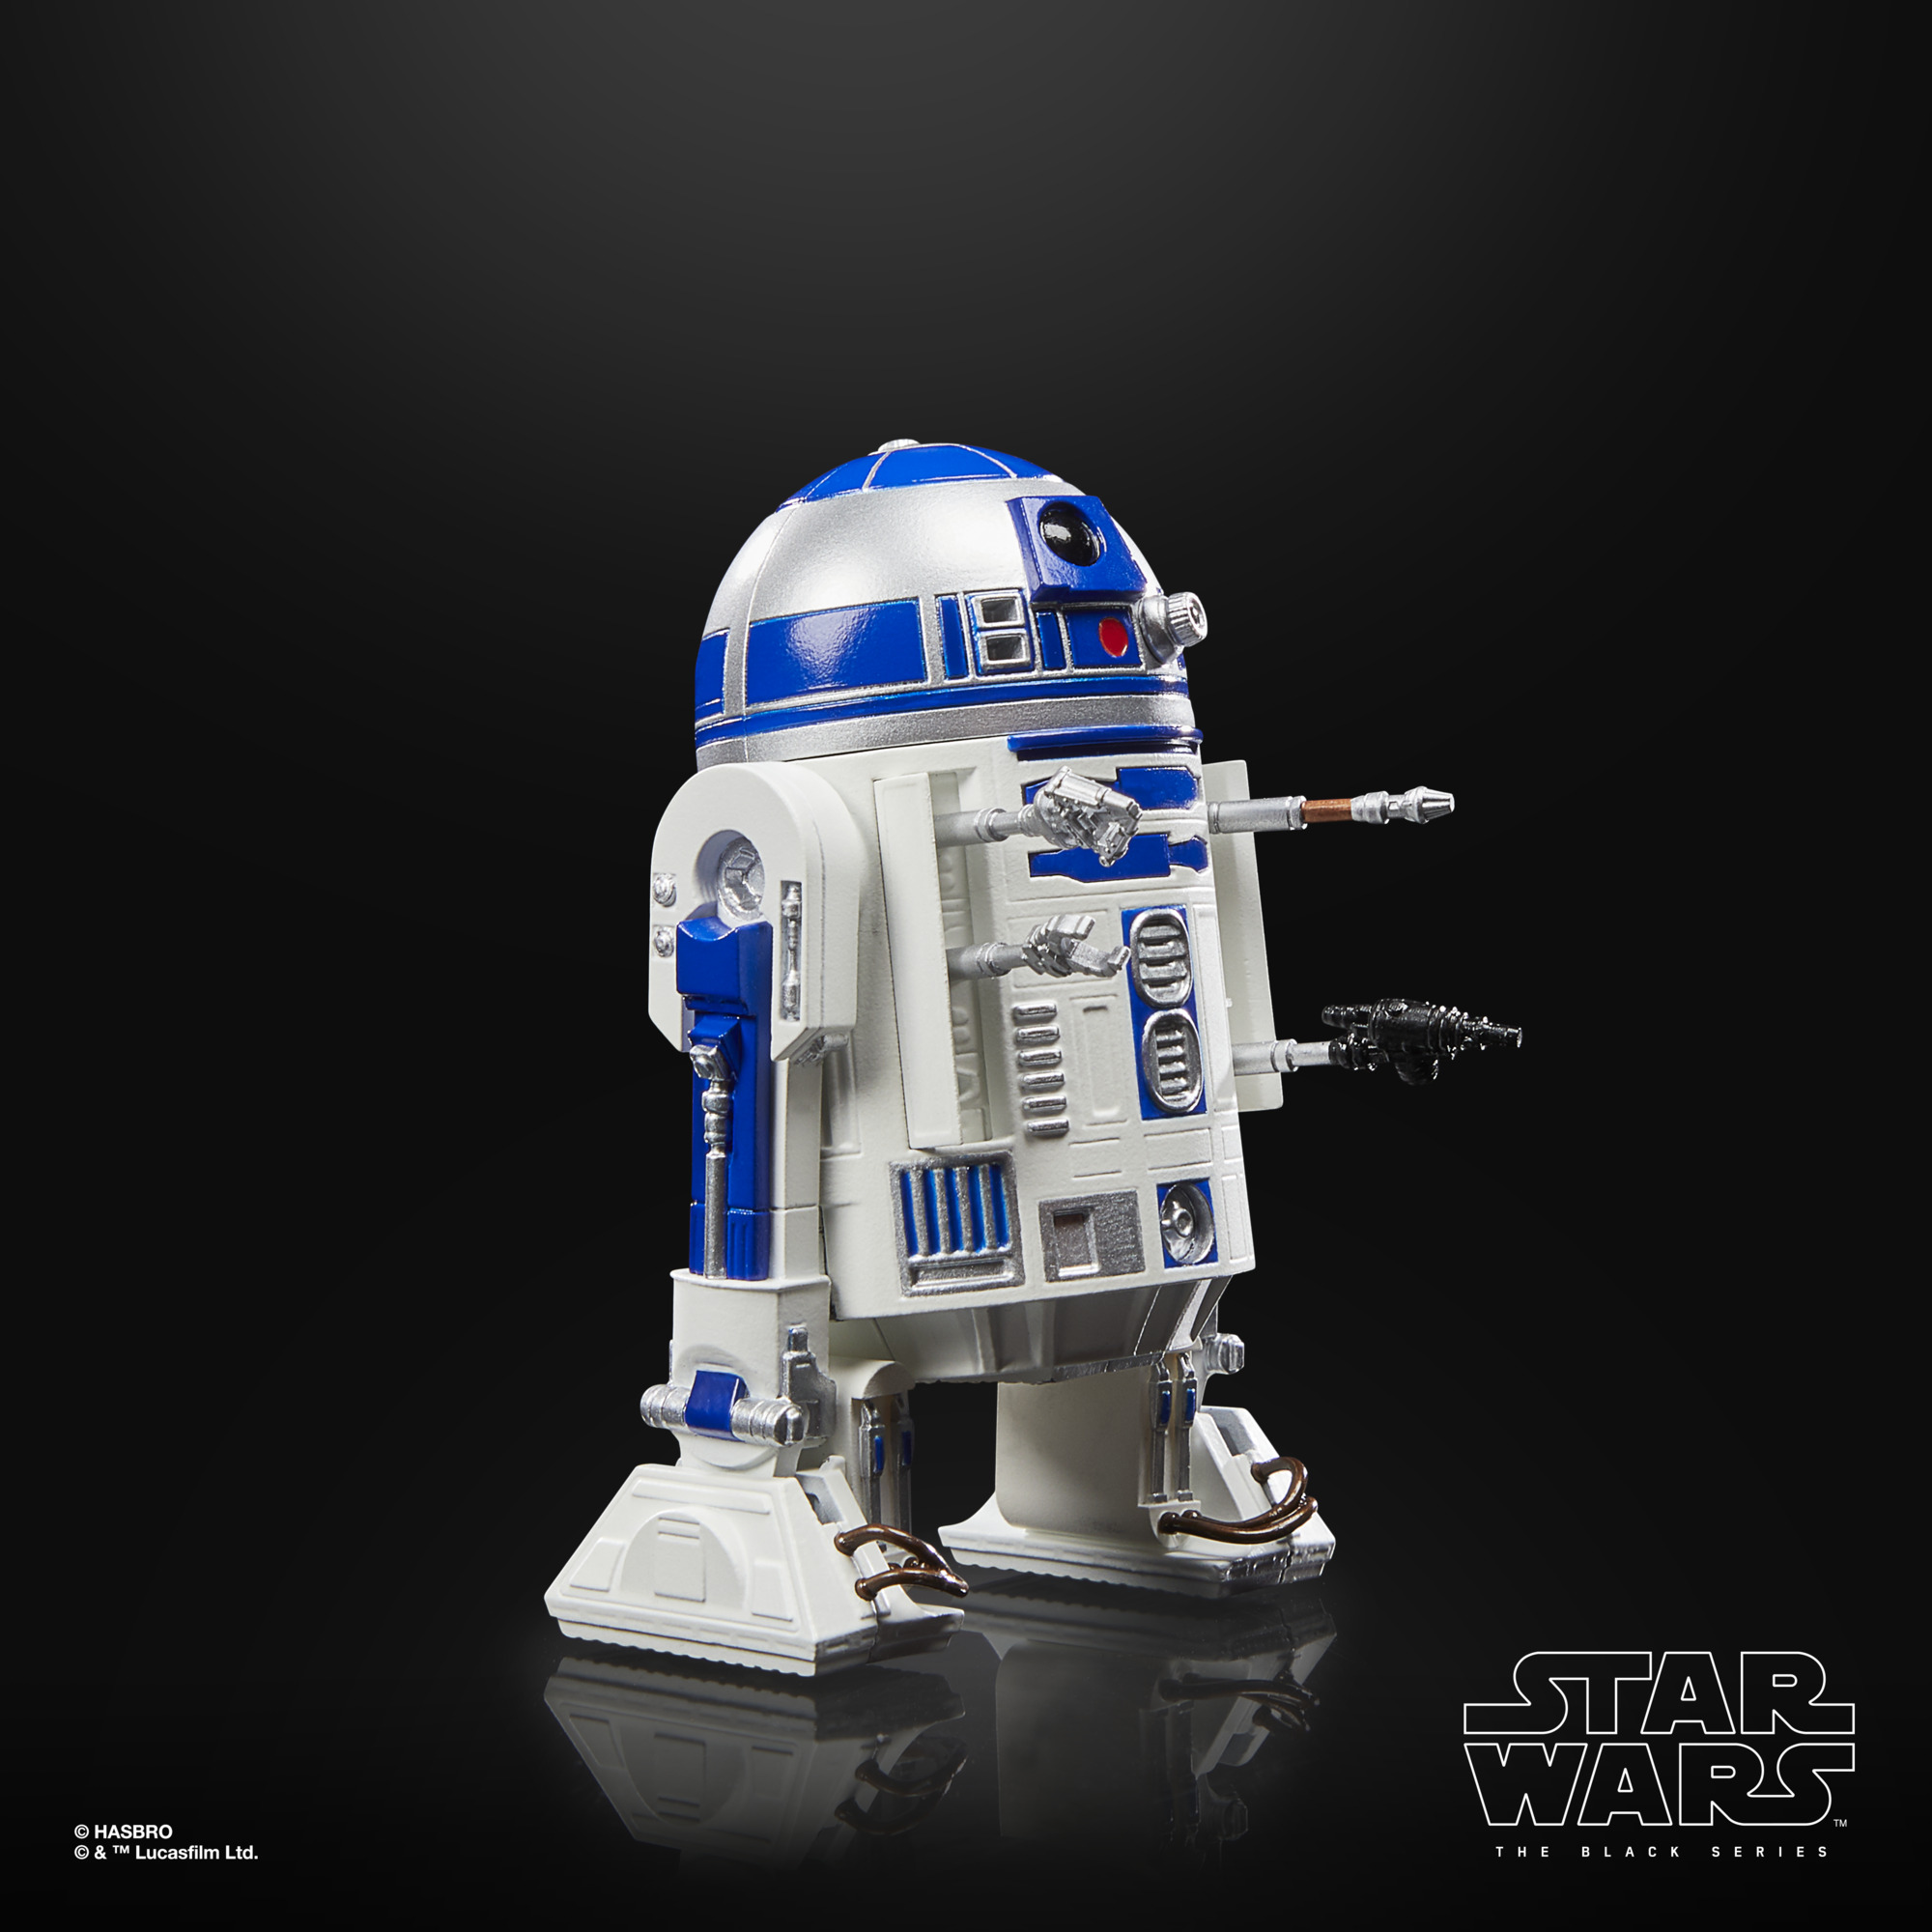 Star Wars The Black Series 40th Anniversary Artoo-Detoo (R2-D2) F70755X2 5010996135780